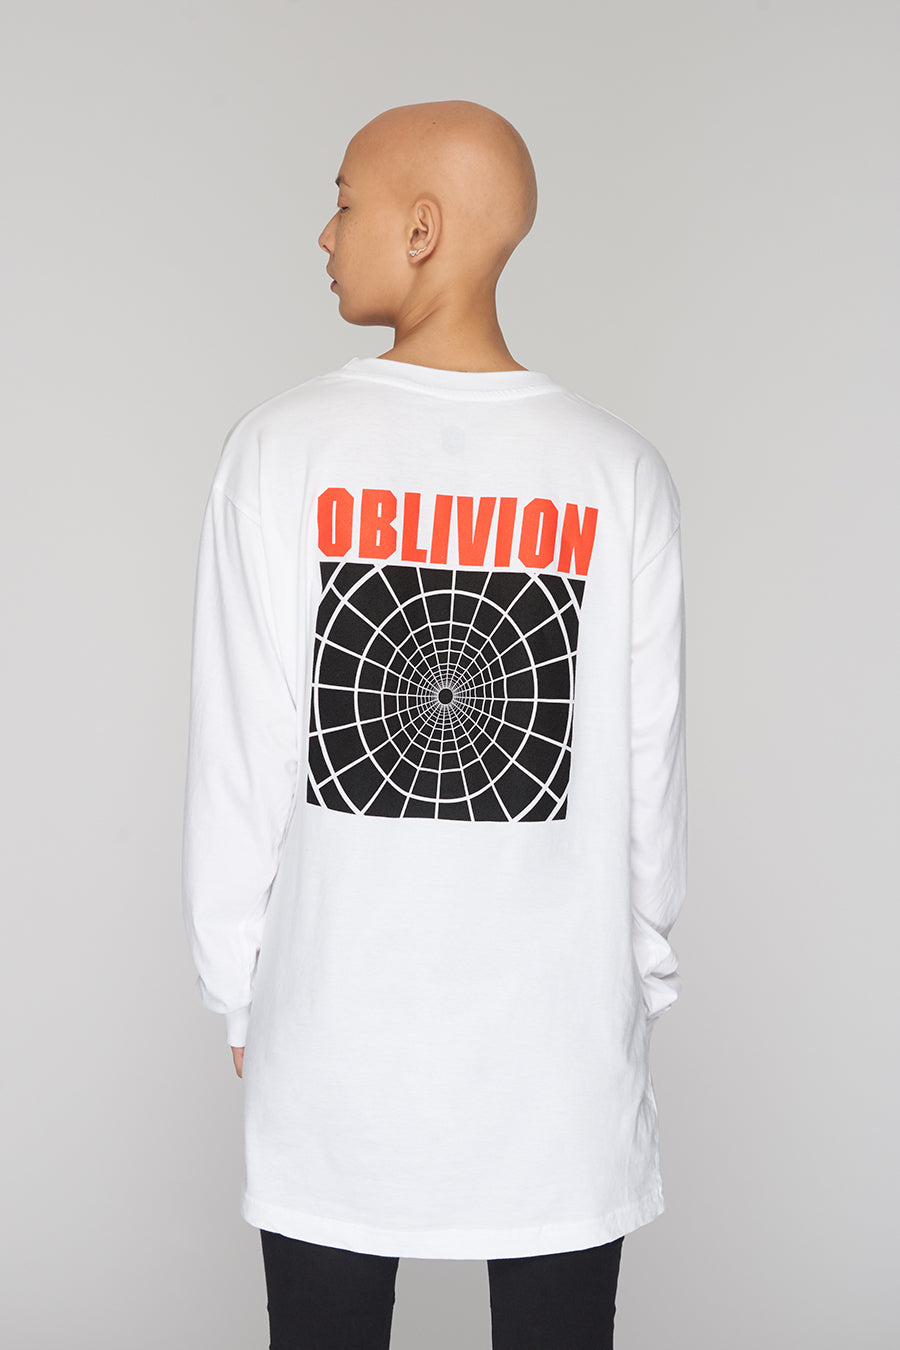 Oblivion Long Sleeve (W)